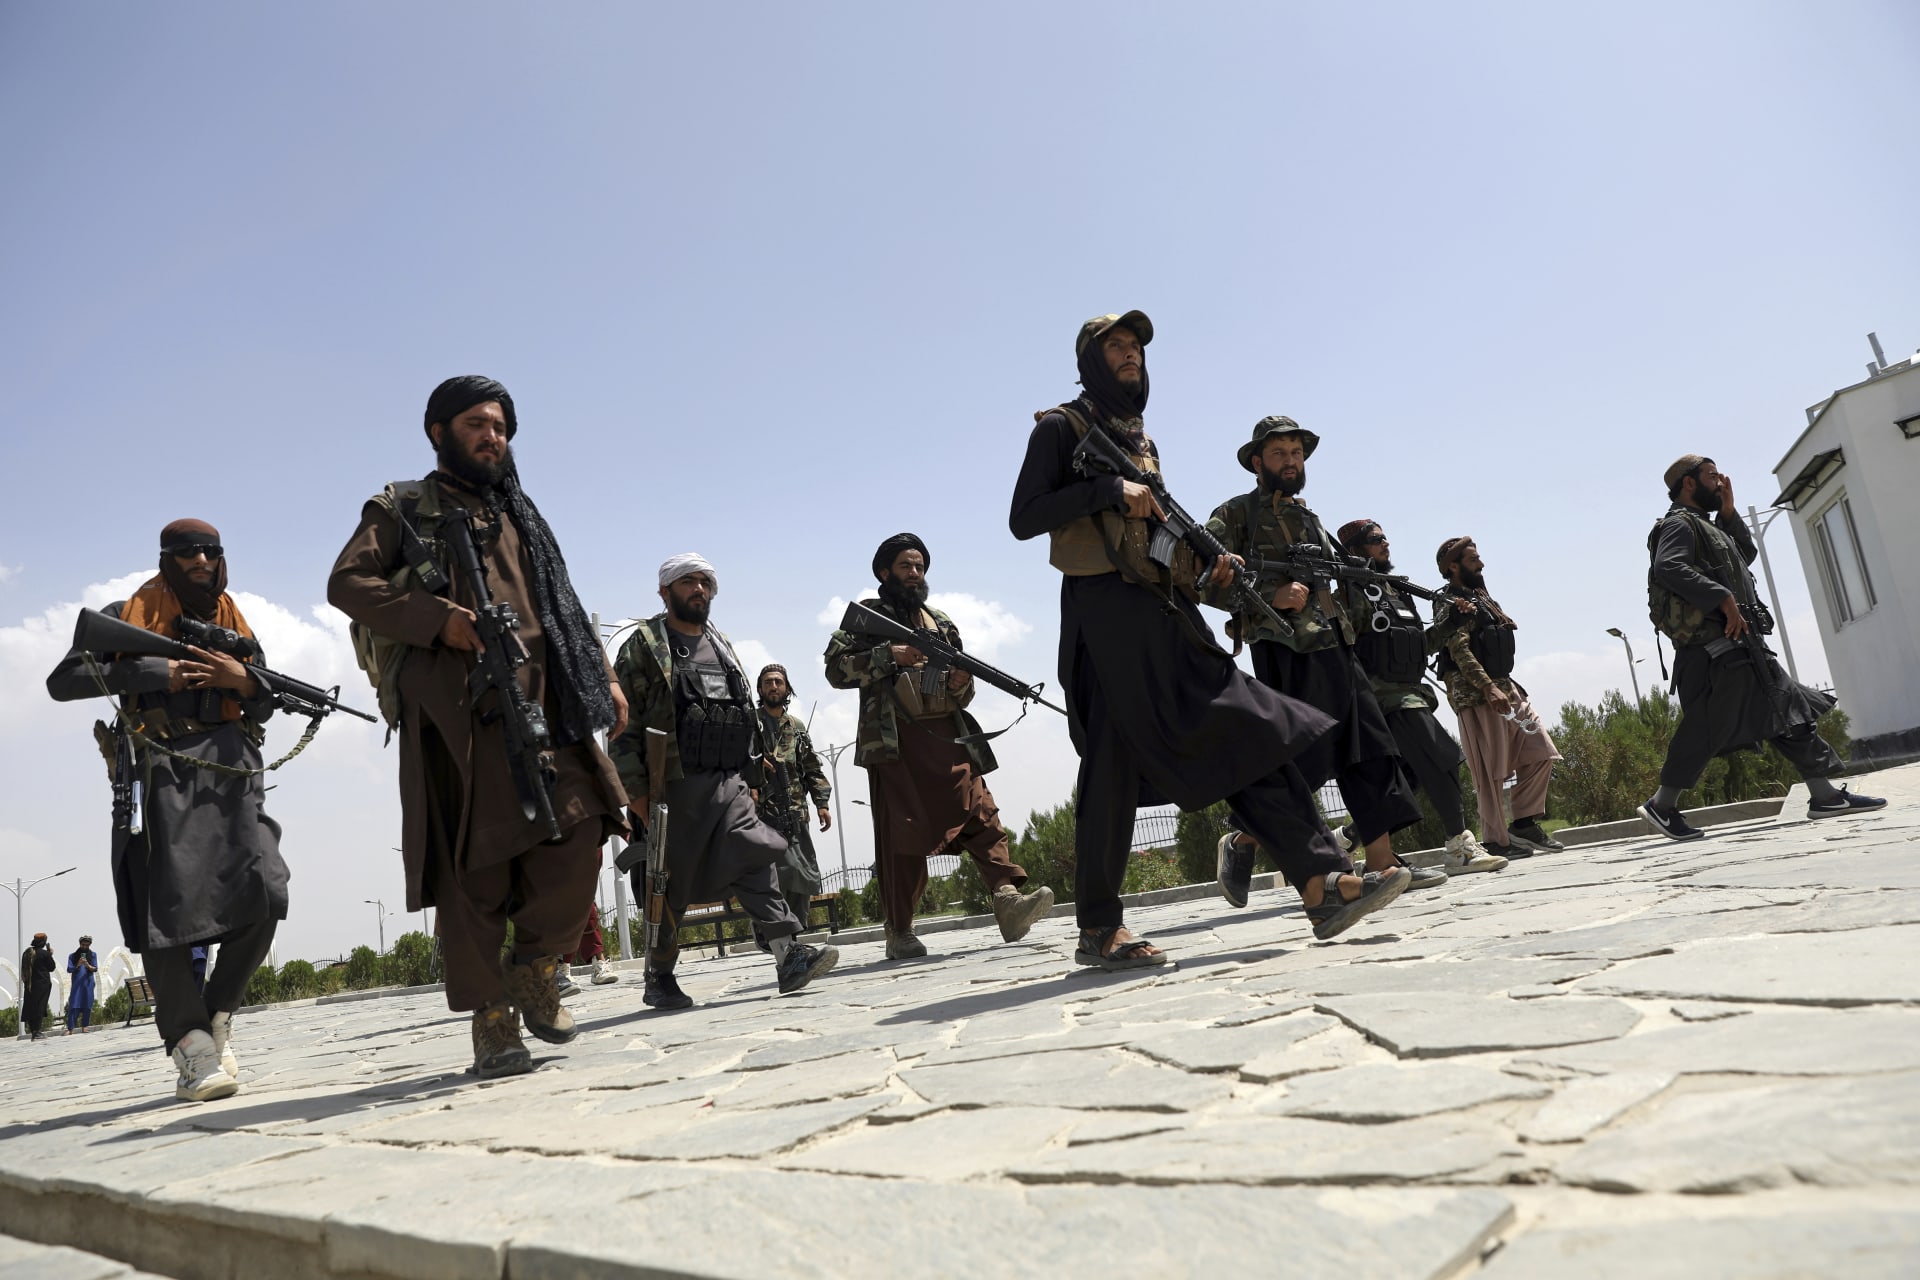 Bojovníci Tálibánu si připsali další hrůzný čin. (Ilustrační snímek)